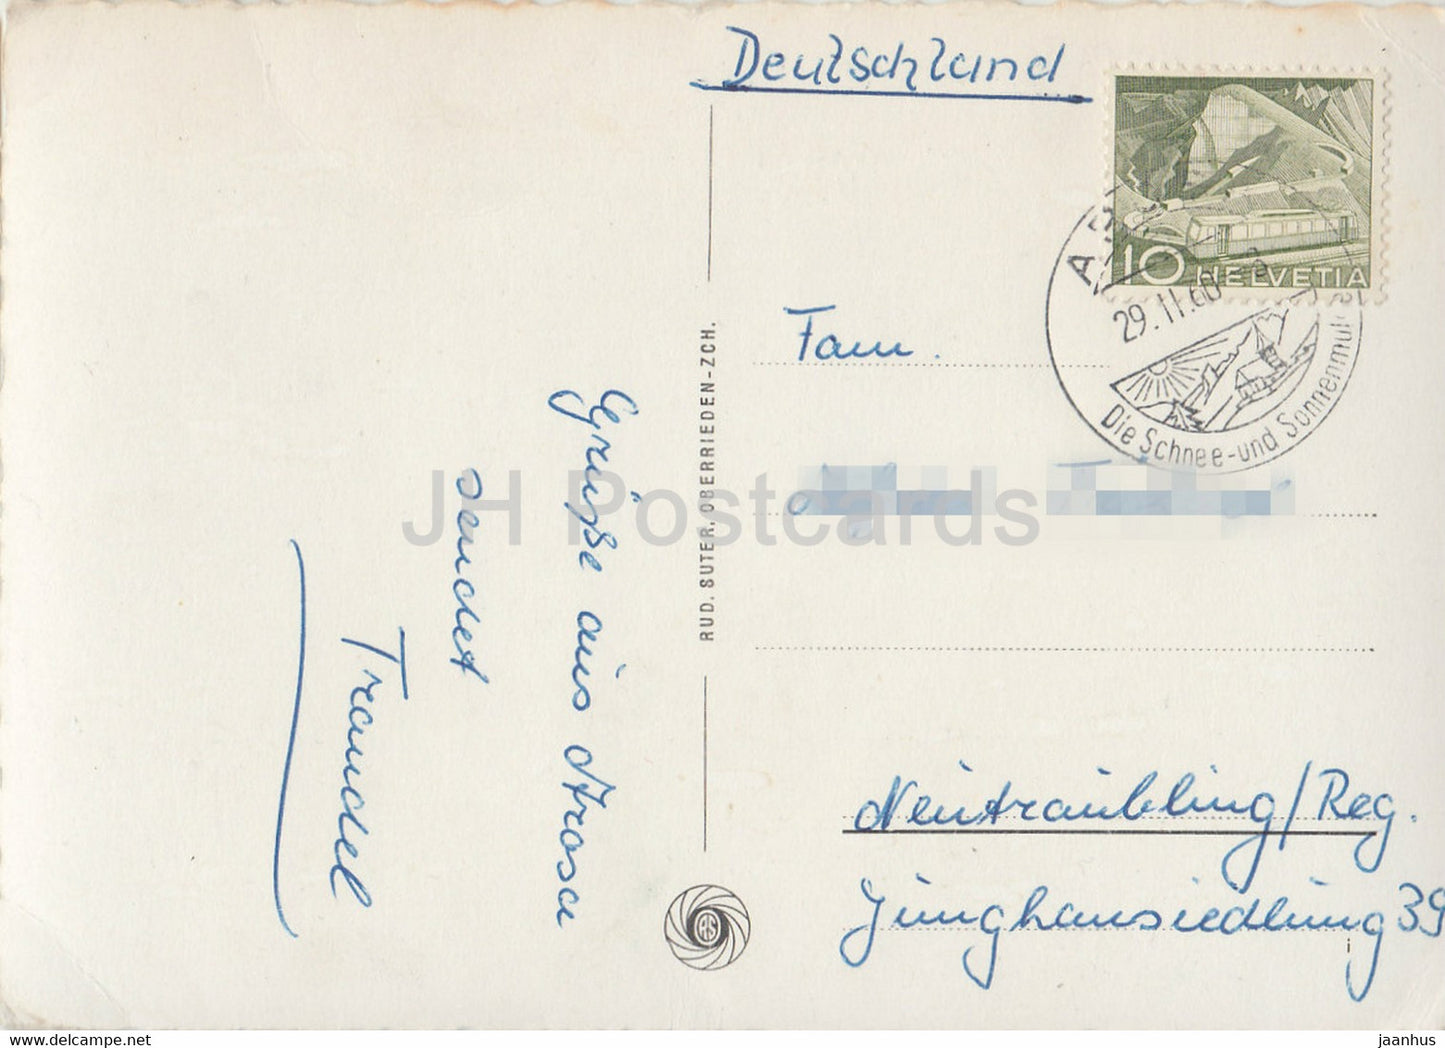 Arosa mit Furkahorner – 1960 – Schweiz – gebraucht